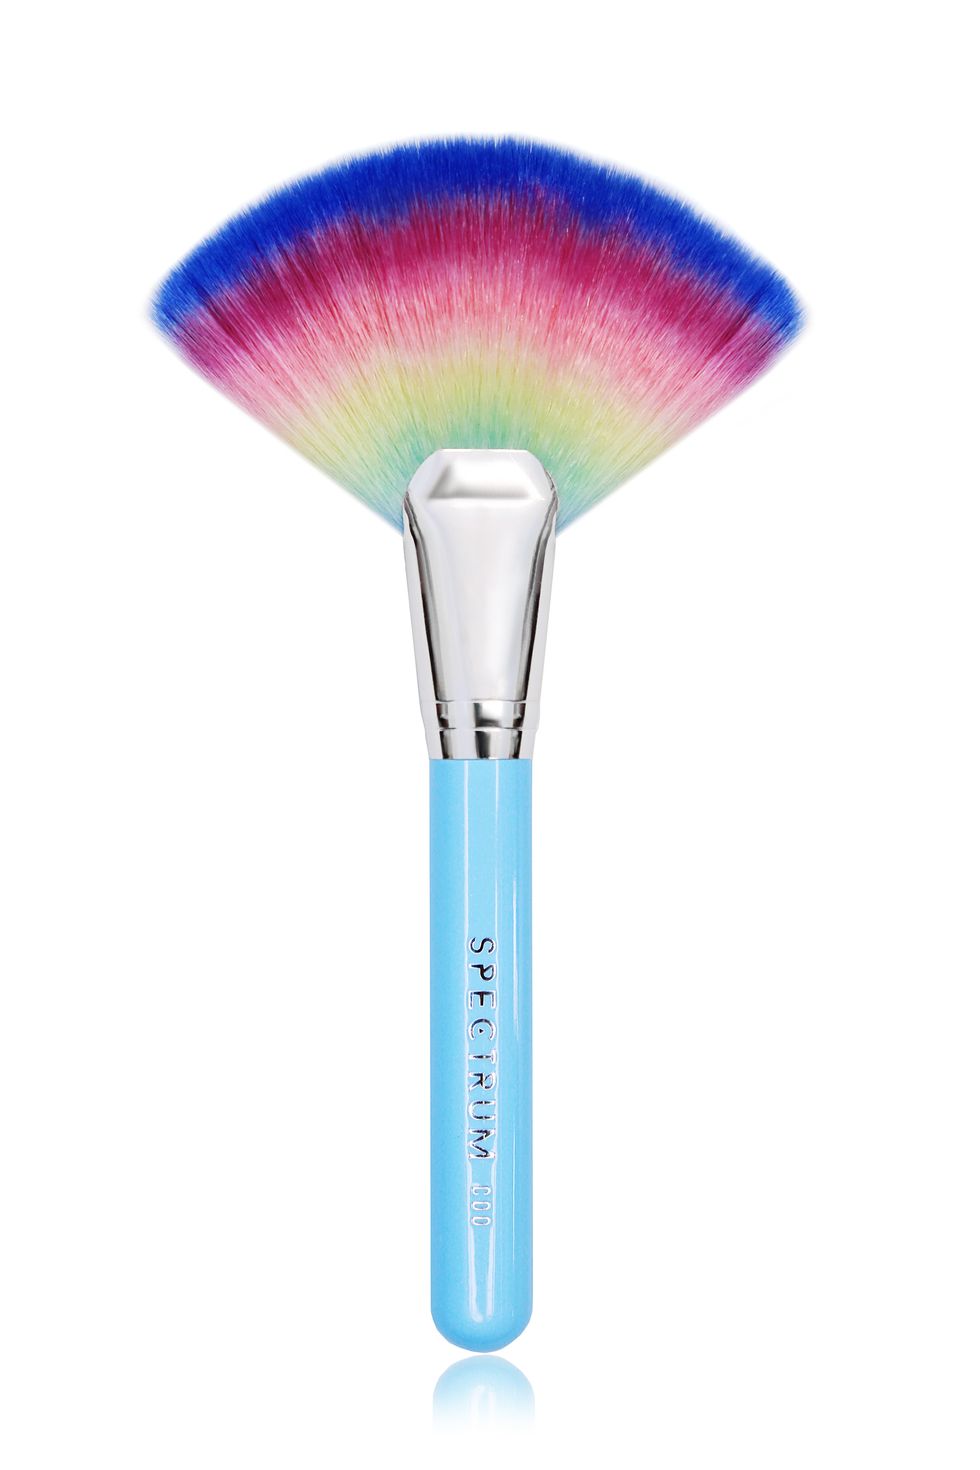 Spectrum brushes